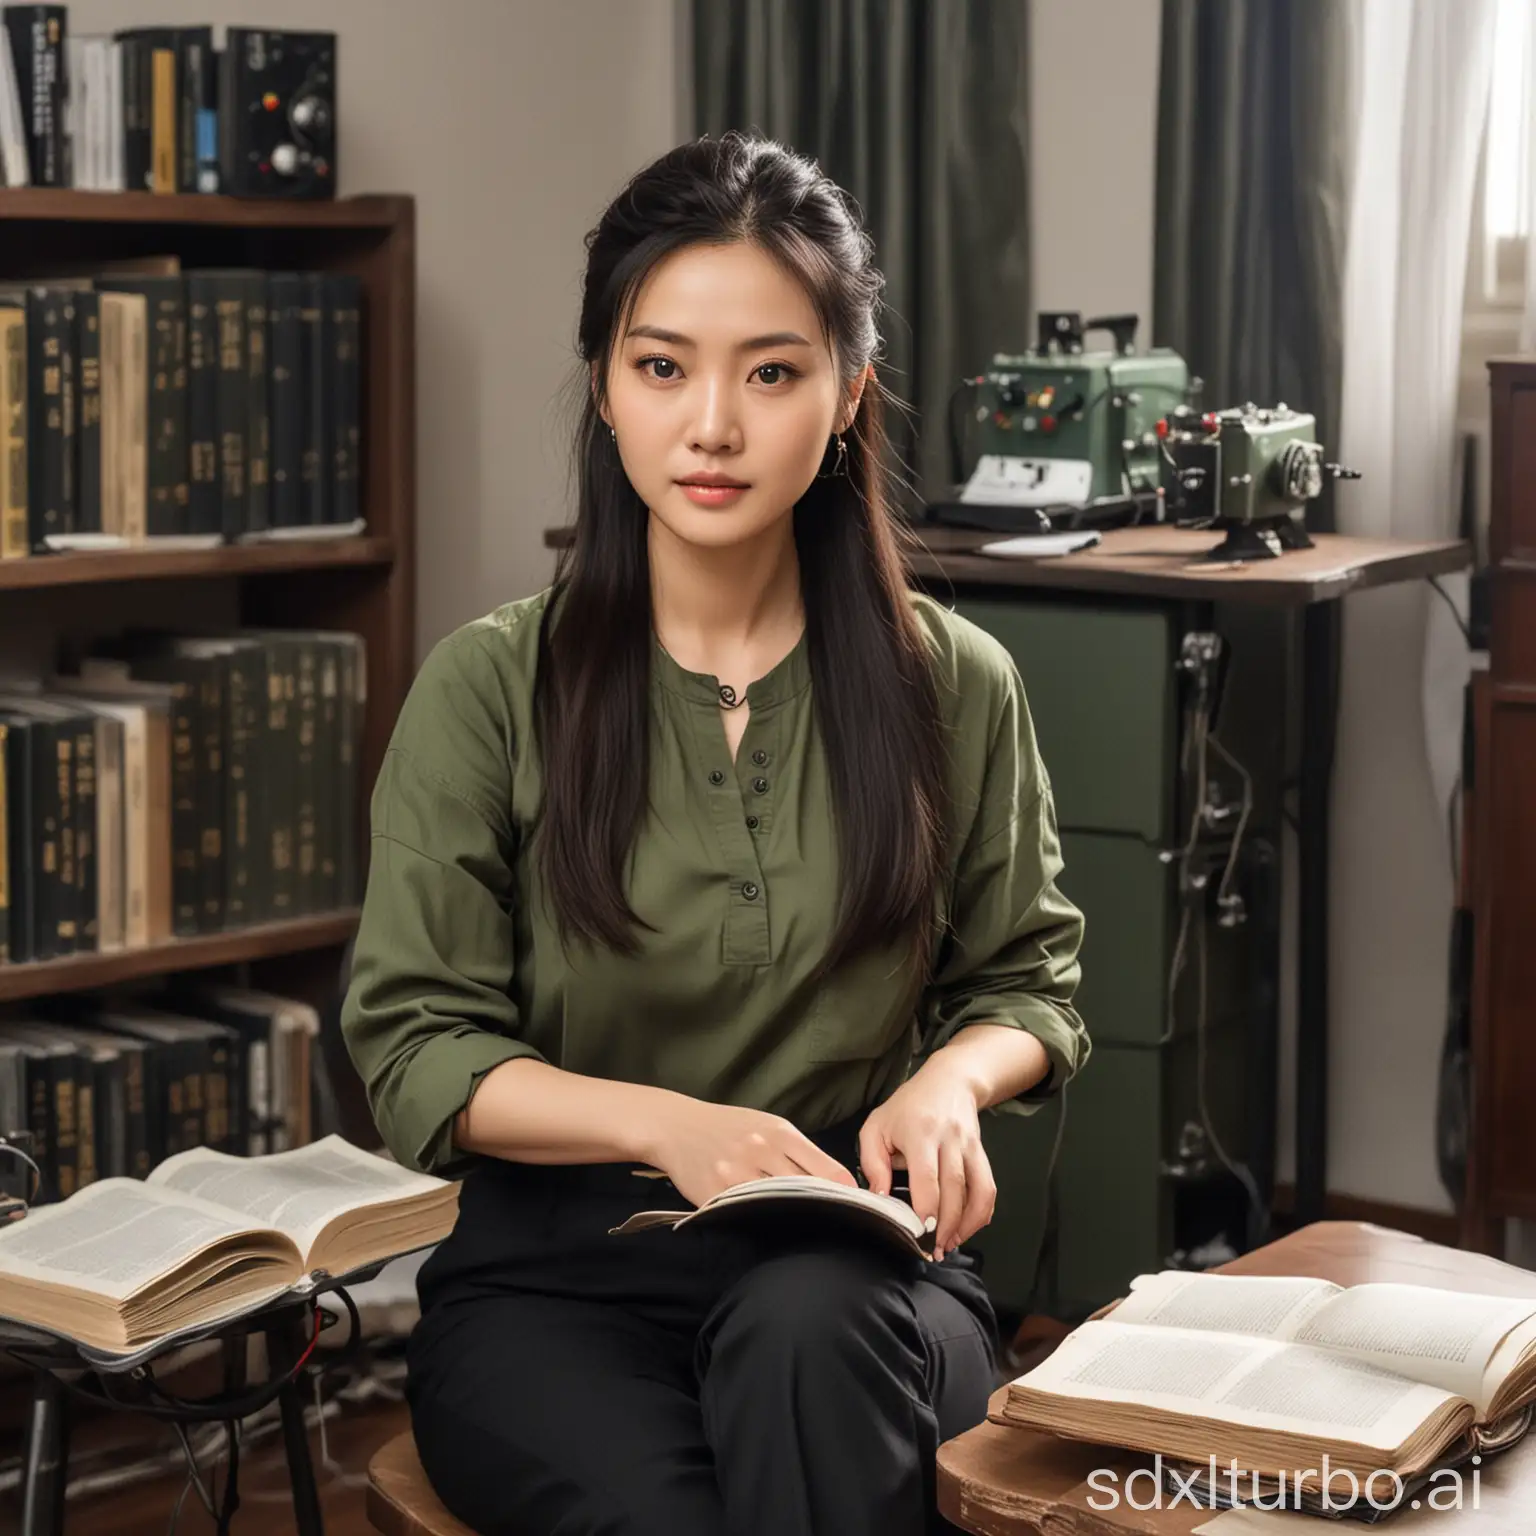 一个漂亮的中国女教授，长相酷似女明星刘涛，穿着普通的军绿色上衣，普通的黑裤子，长发梳成辫子，坐在房间里看书，房间背景有一堆电器实验设备